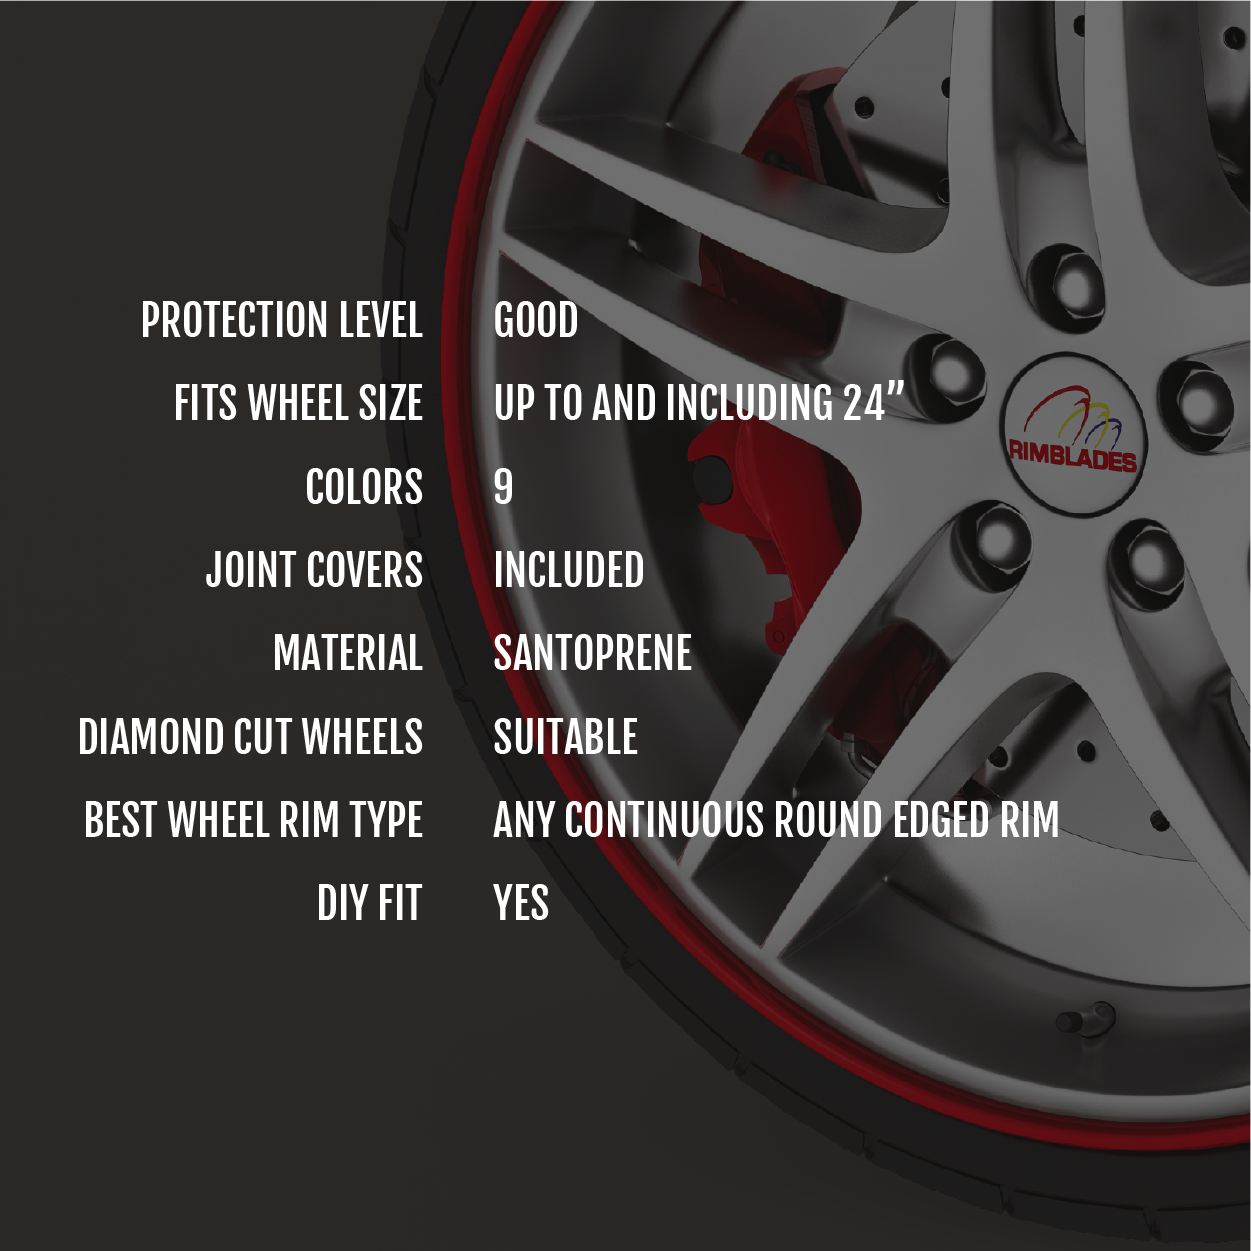 Alloy Wheel Rim Protectors, car rim protection - Rimblades Ltd